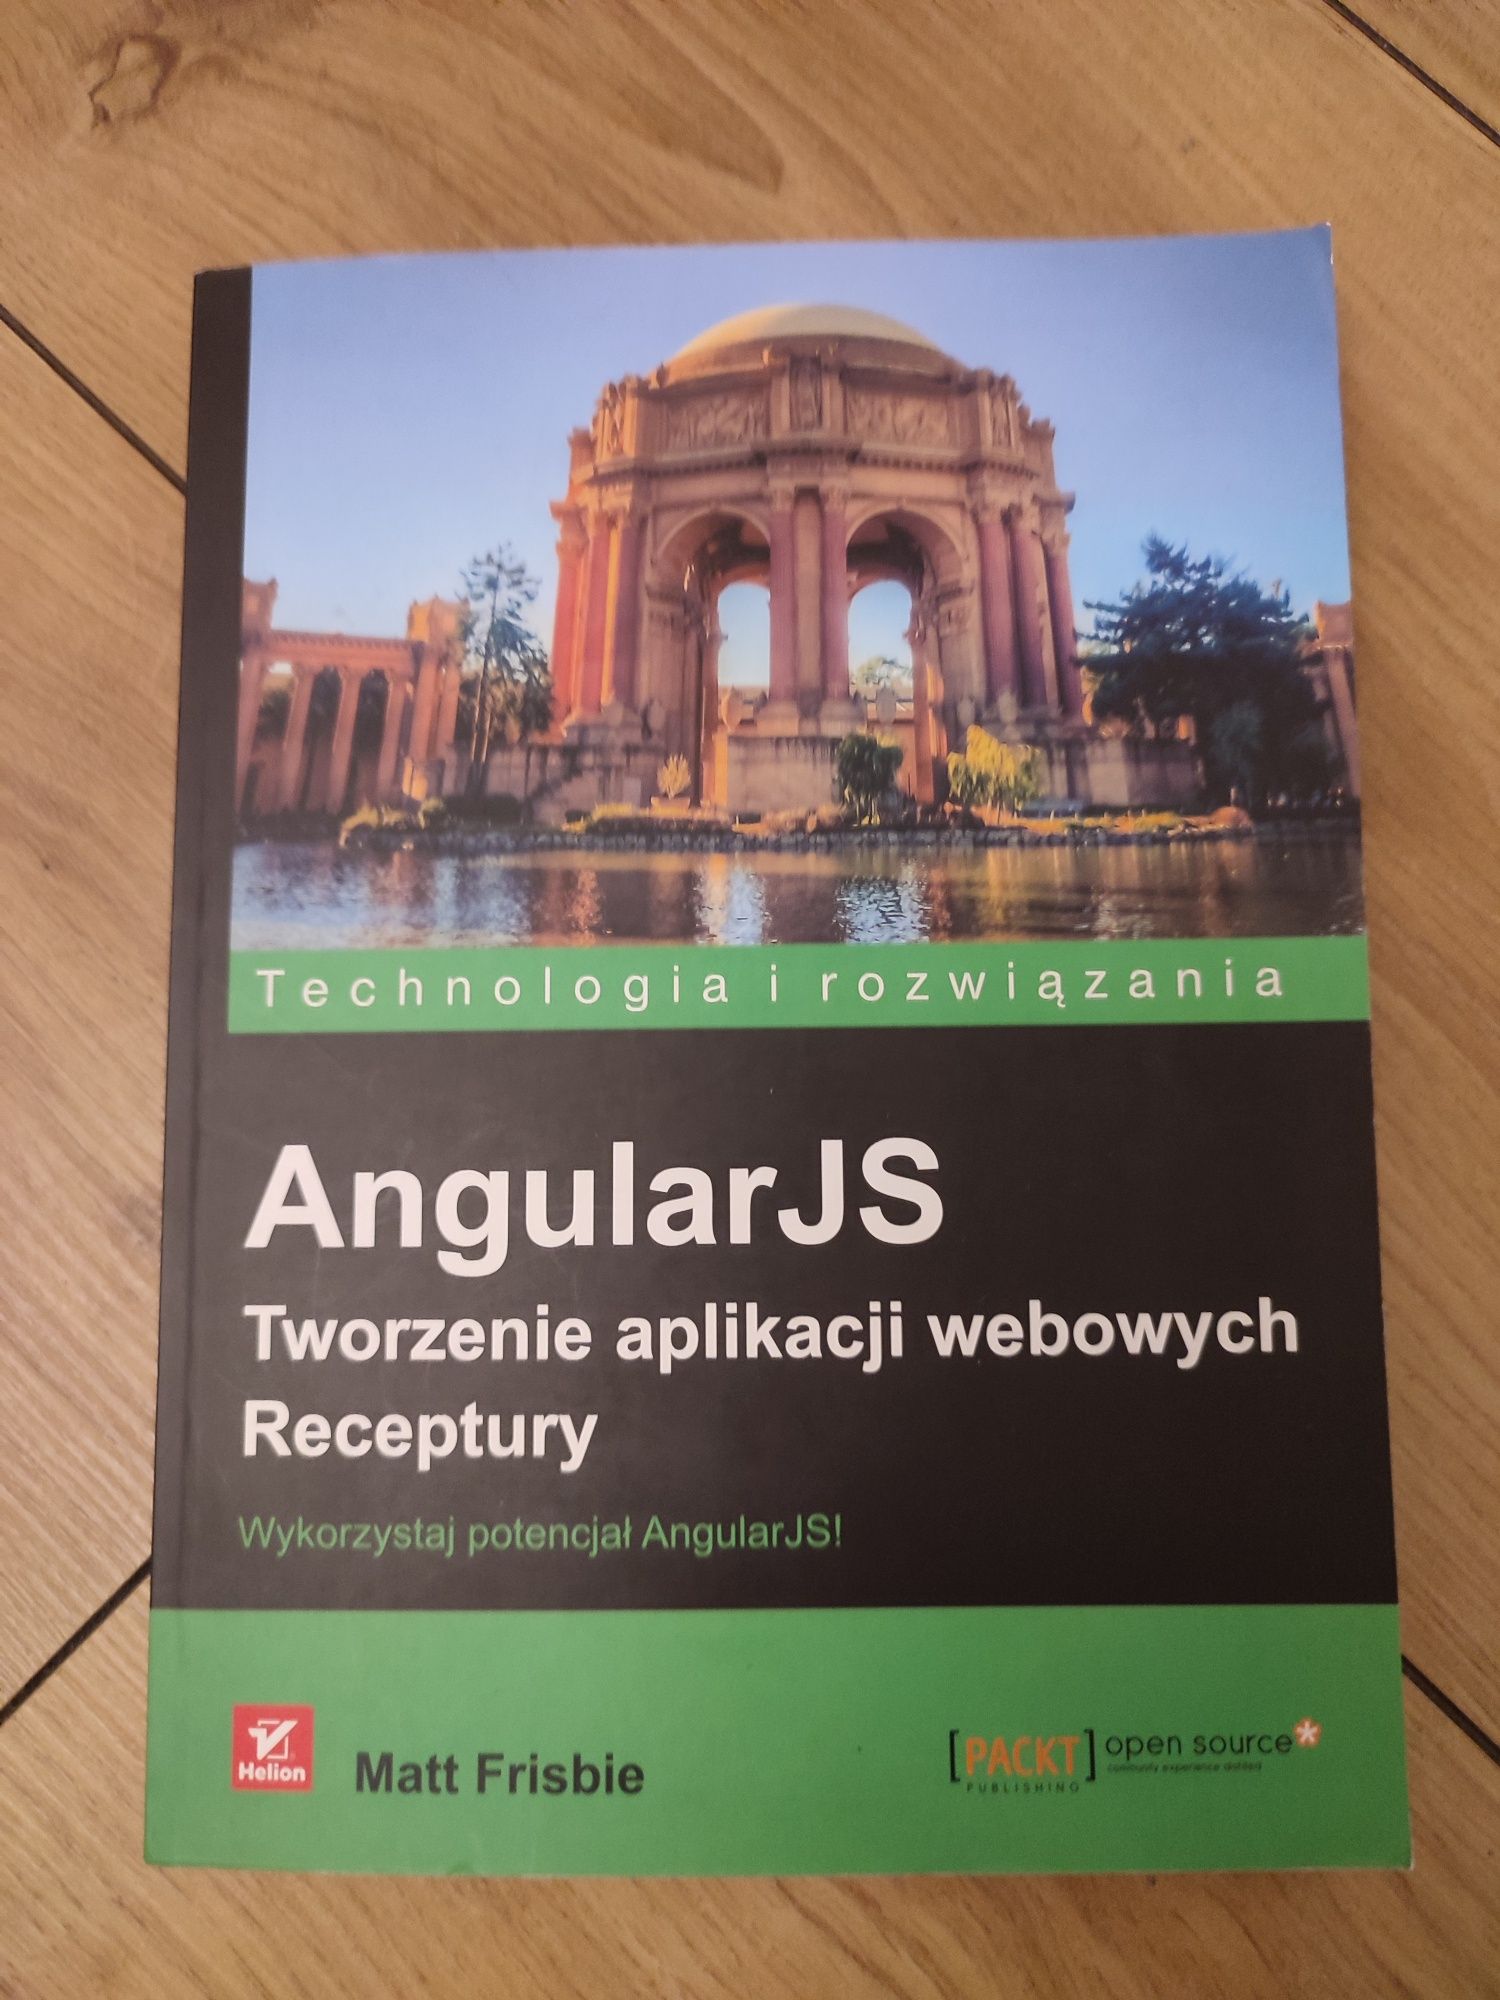 Angular js - tworzenie aplikacji webowych - receptury